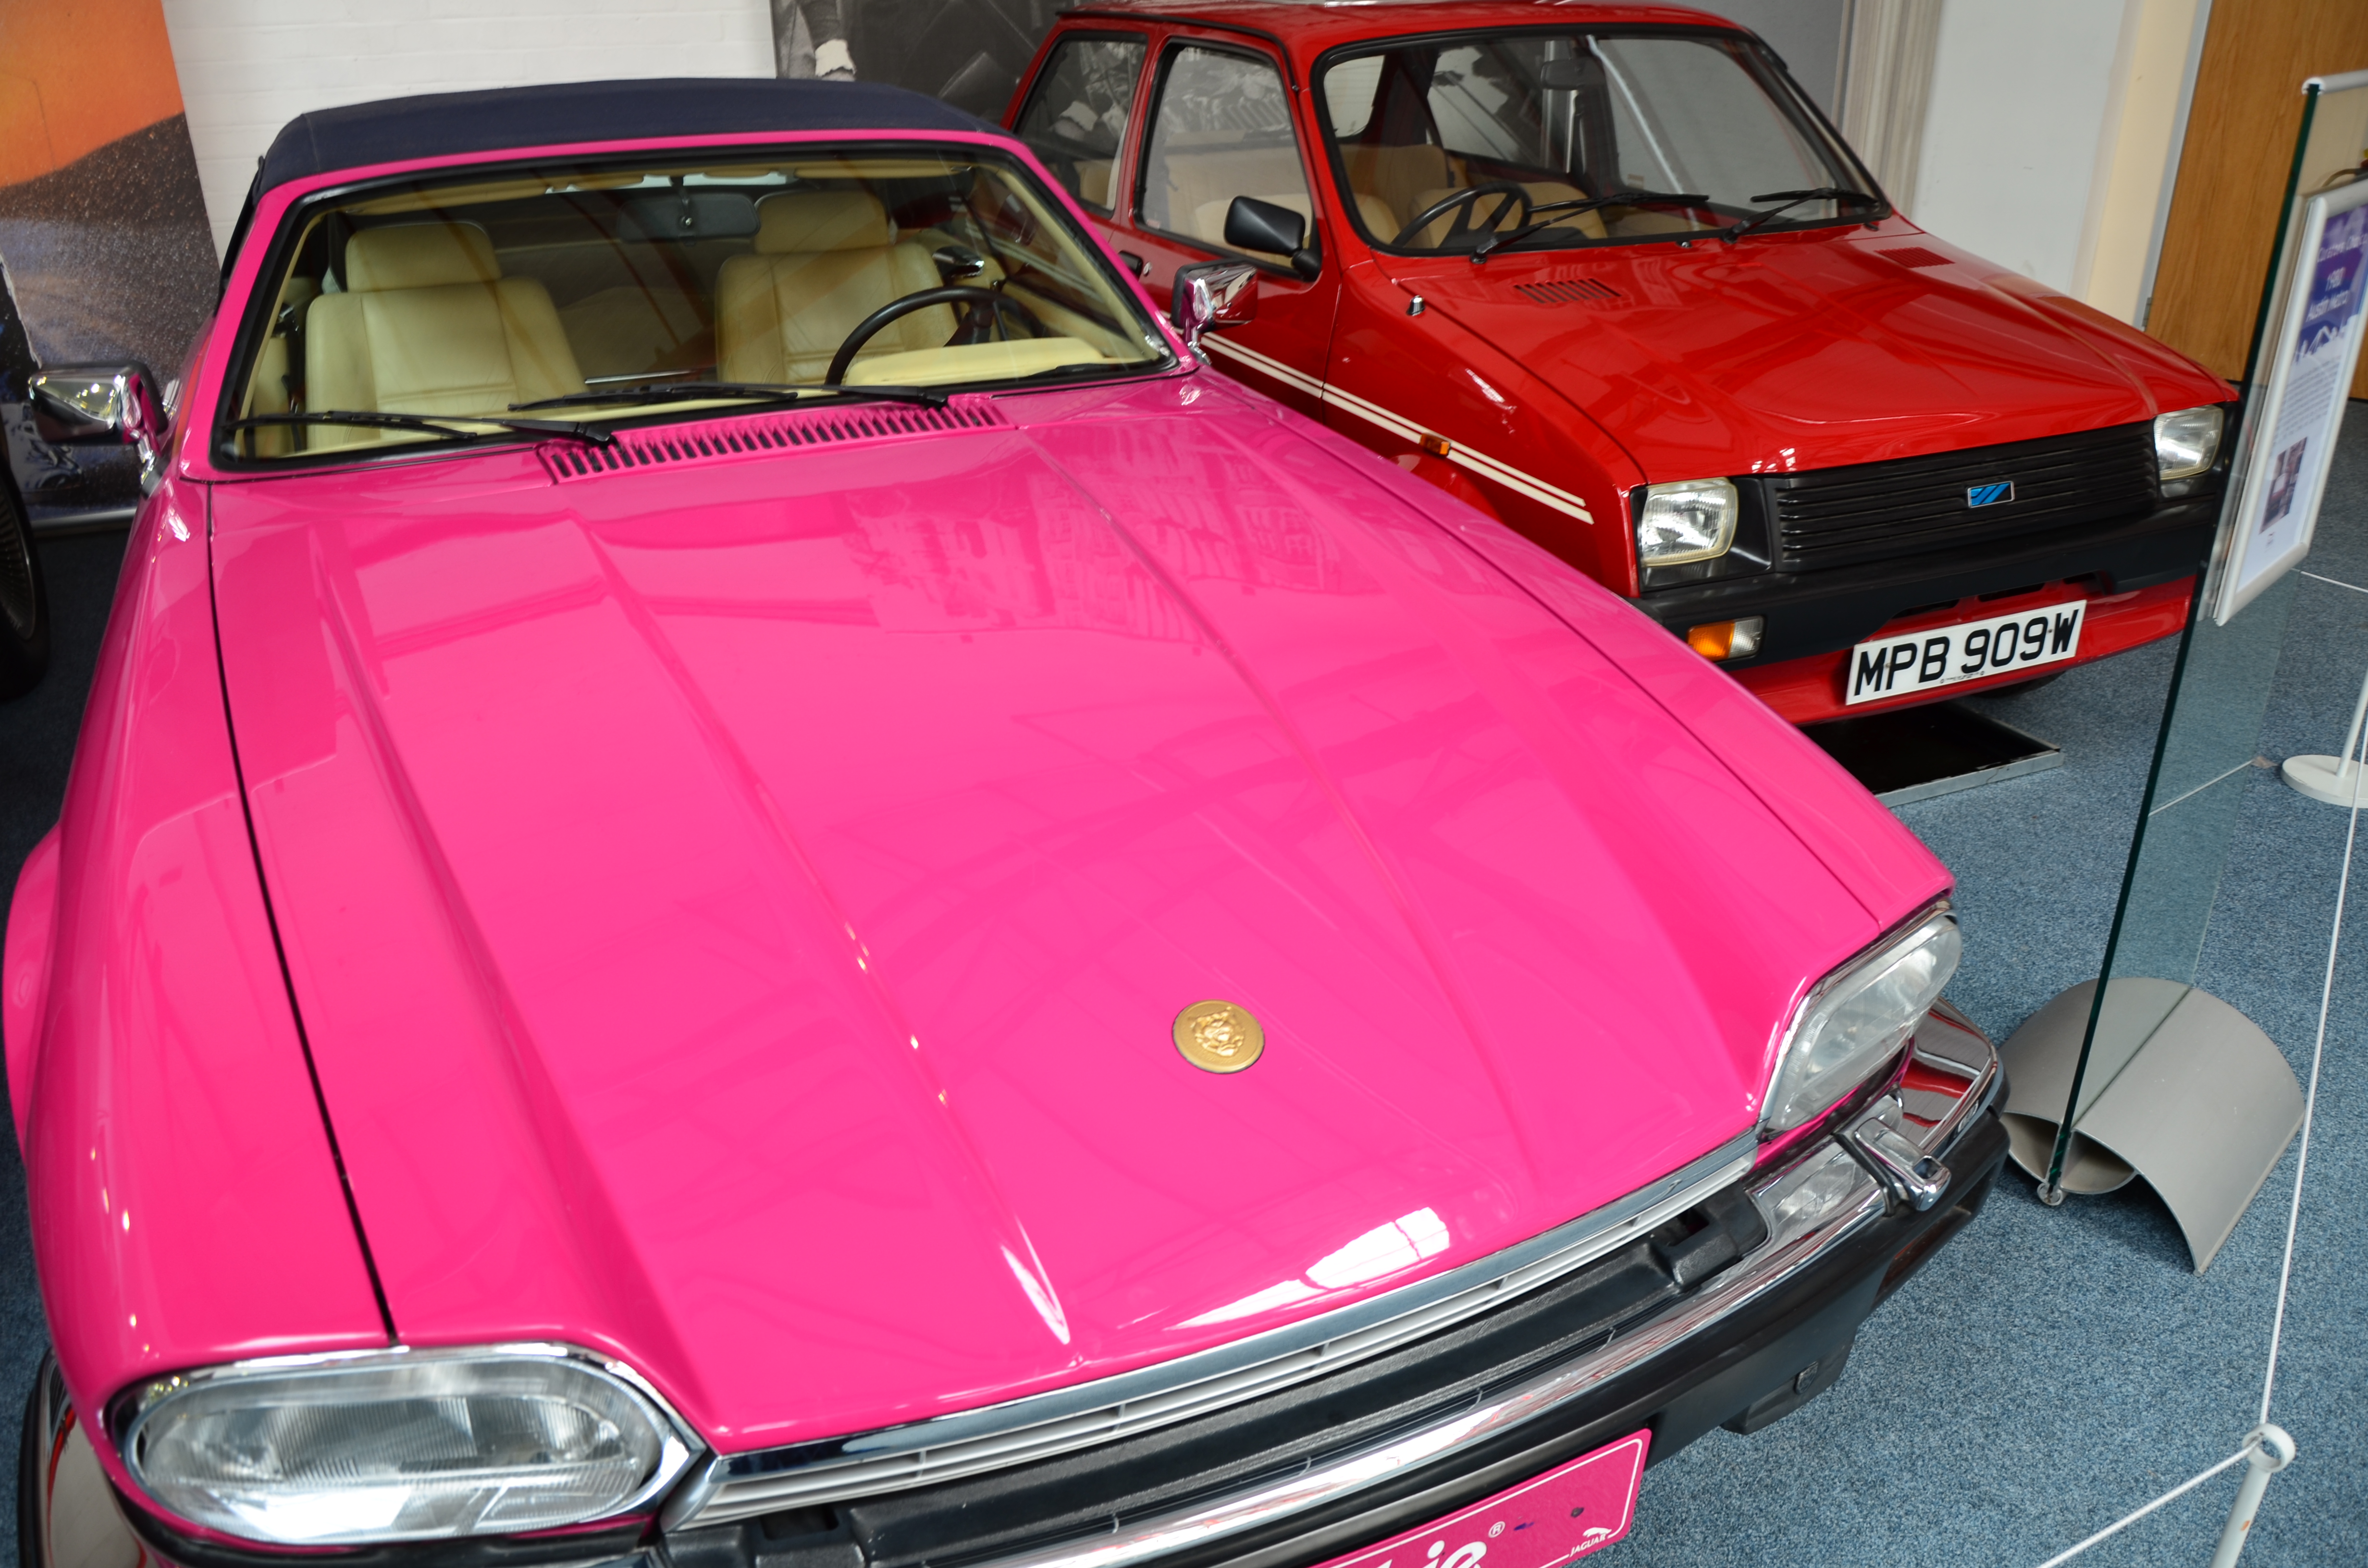 File:1990 Jaguar XJ-S Barbie car at Coventry Motor Museum.jpg Wikimedia Commons